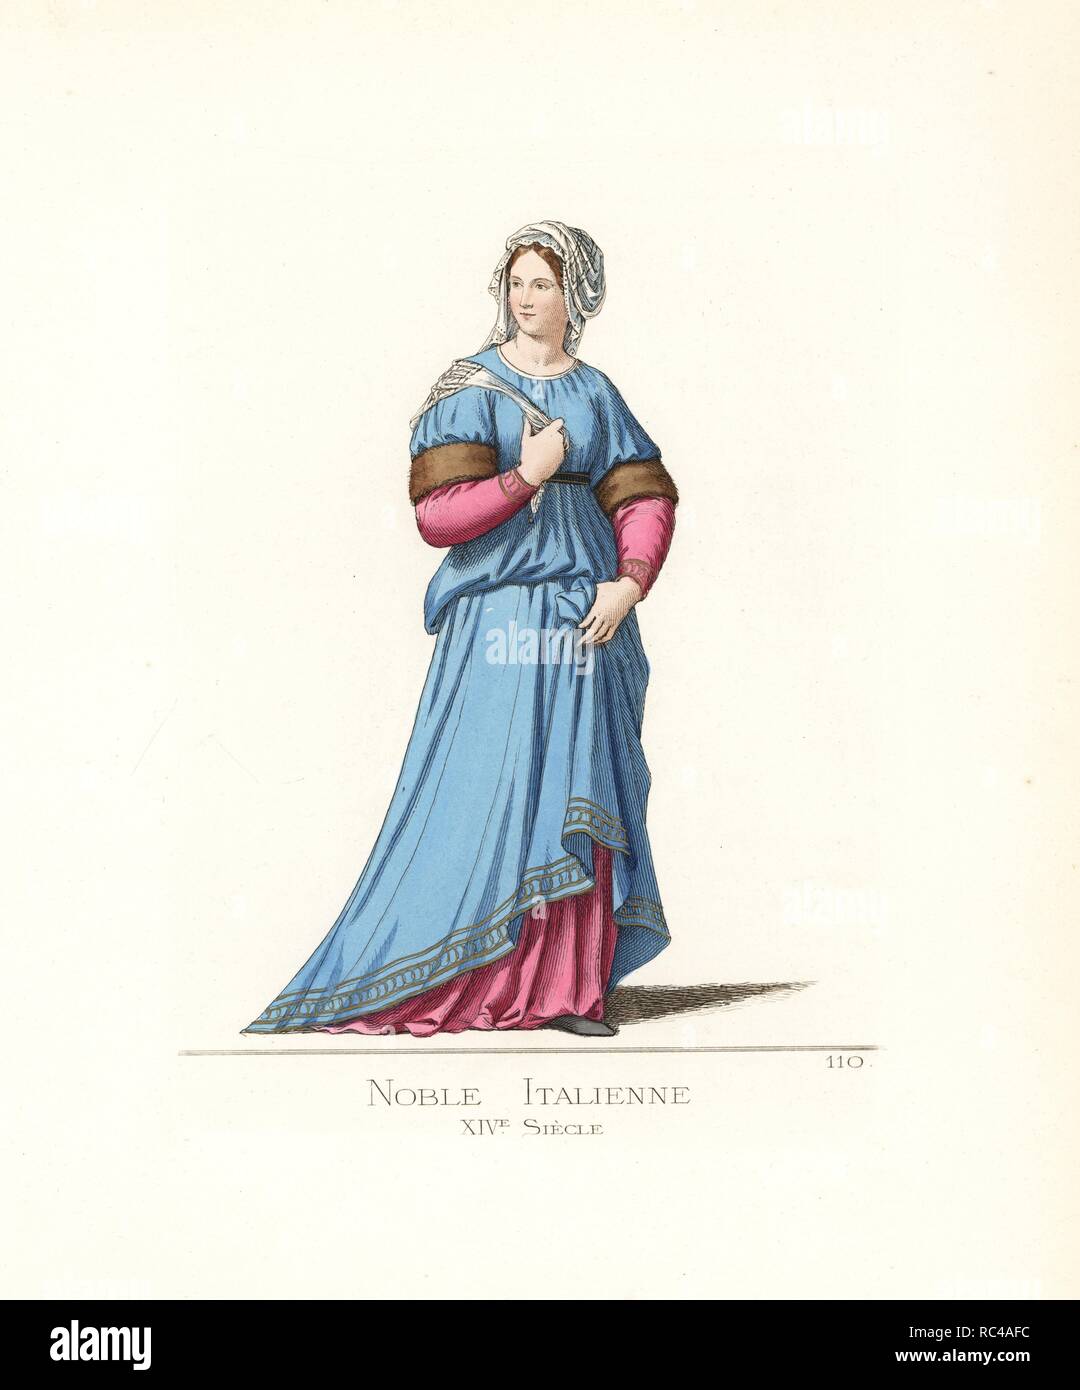 Costume d'un aristocrate italien, 14e siècle. Elle porte un voile, une robe  bleue ornée de fourrure et bordés d'or, sur une robe rose. D'après une  peinture à l'Académie des beaux-arts, Sienne. Illustration